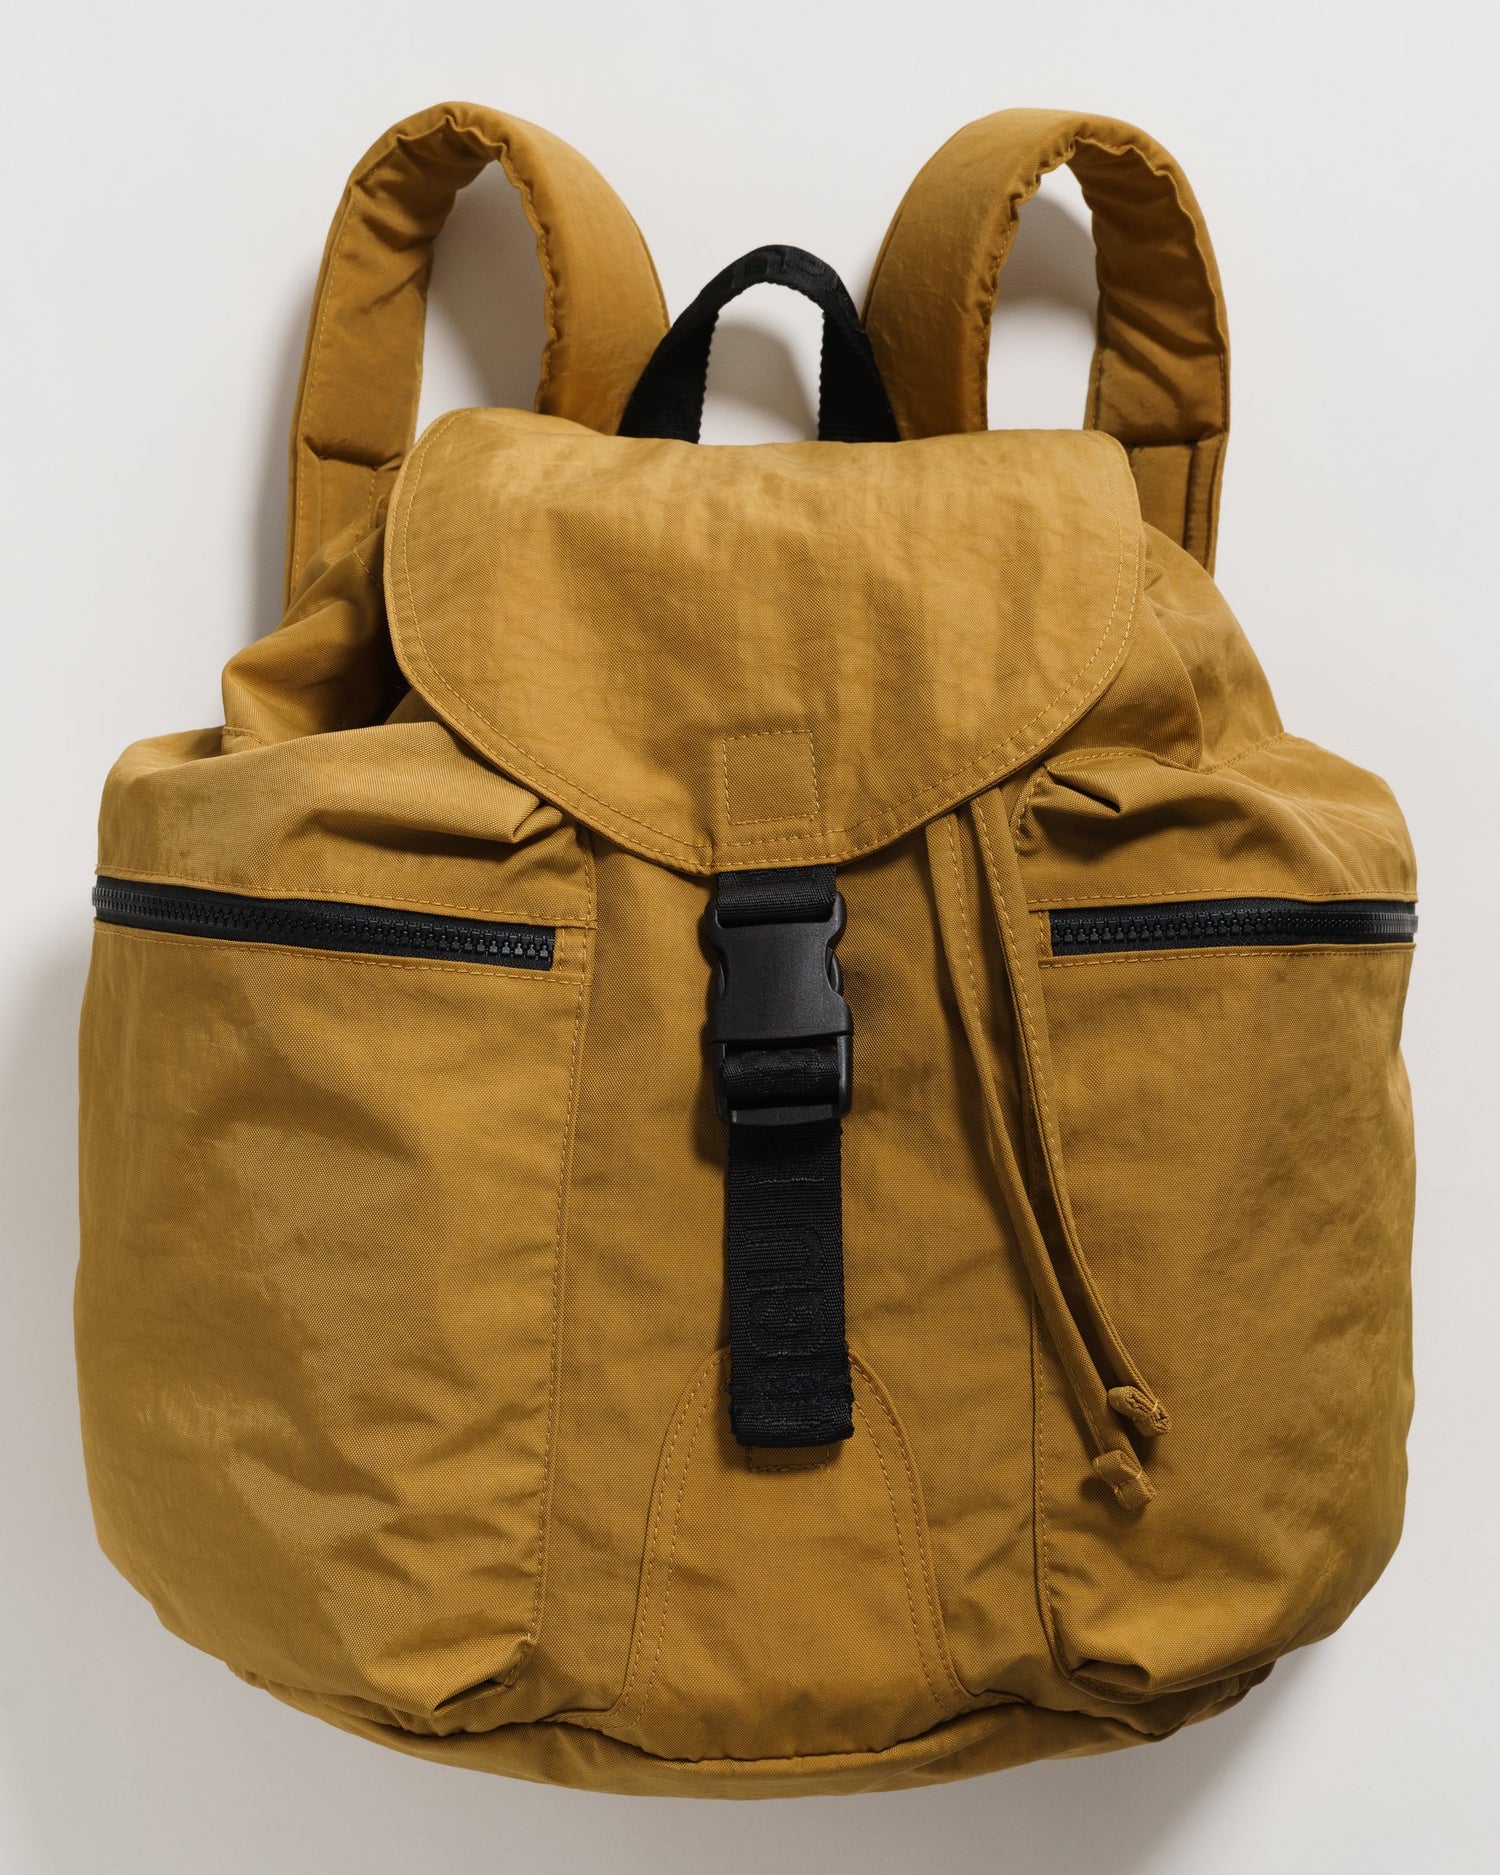 Baggu Large Sport Backpack - Camel